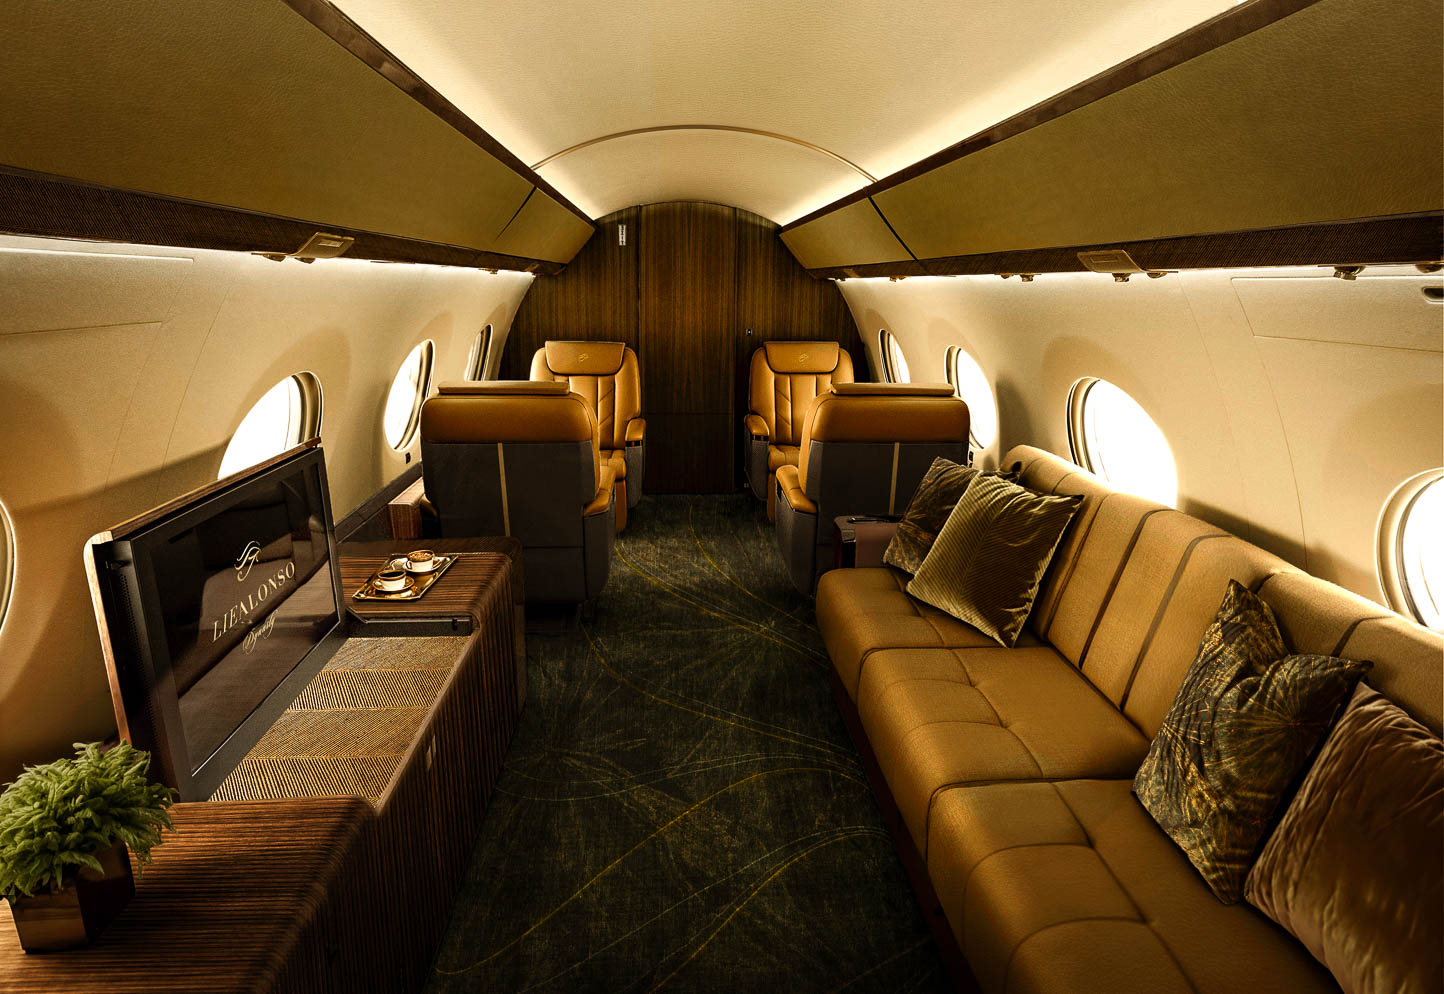 Lie Alonso Dynasty - Gulfstream G650ER/G700 - Private Jet Interior Design Café Suave